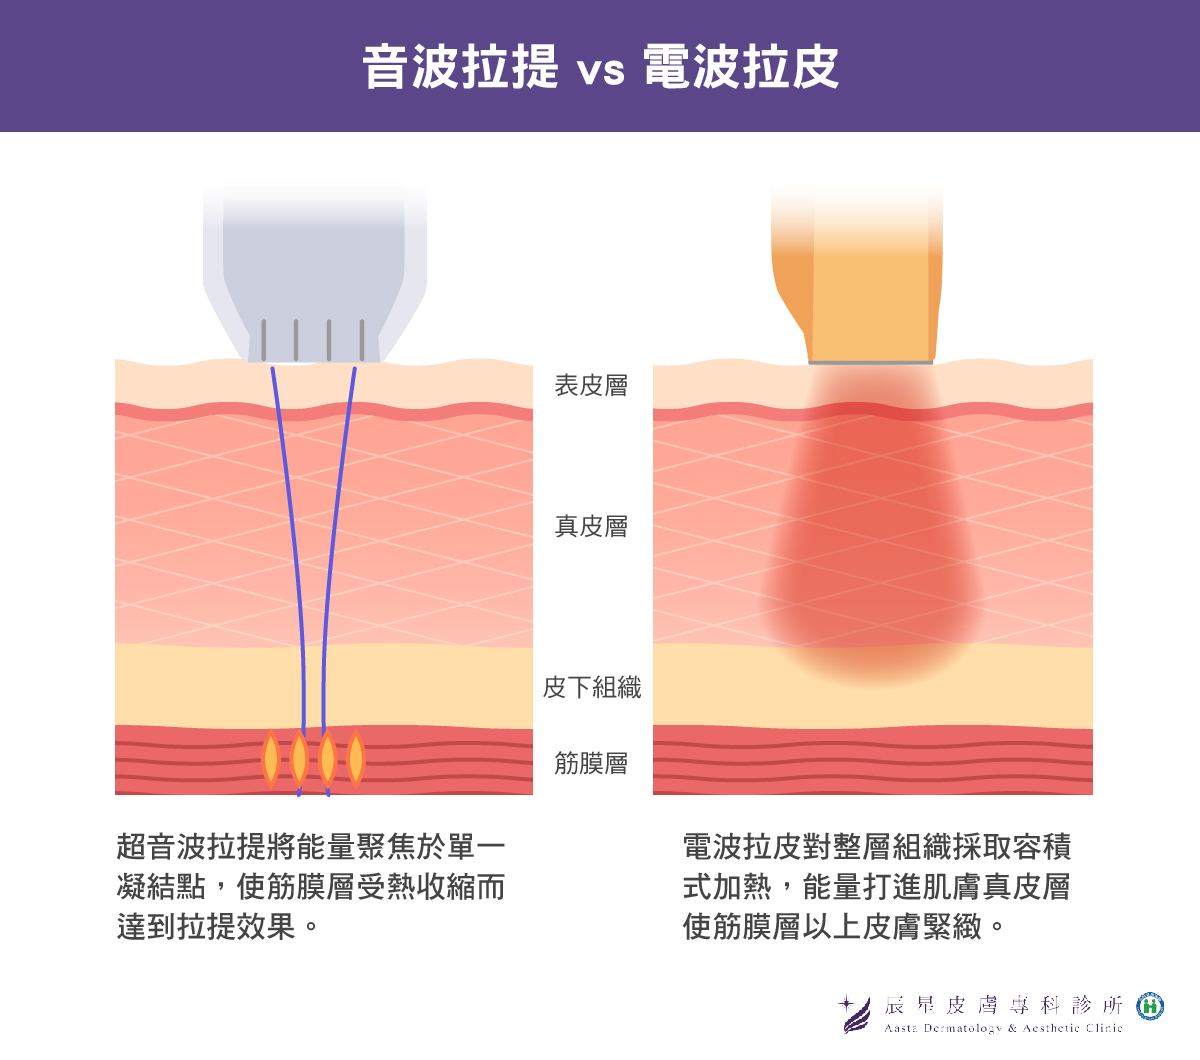 音波拉提與電波拉皮兩種療程的差異，由圖片可看出兩者最大的差別在於加熱方式不同。